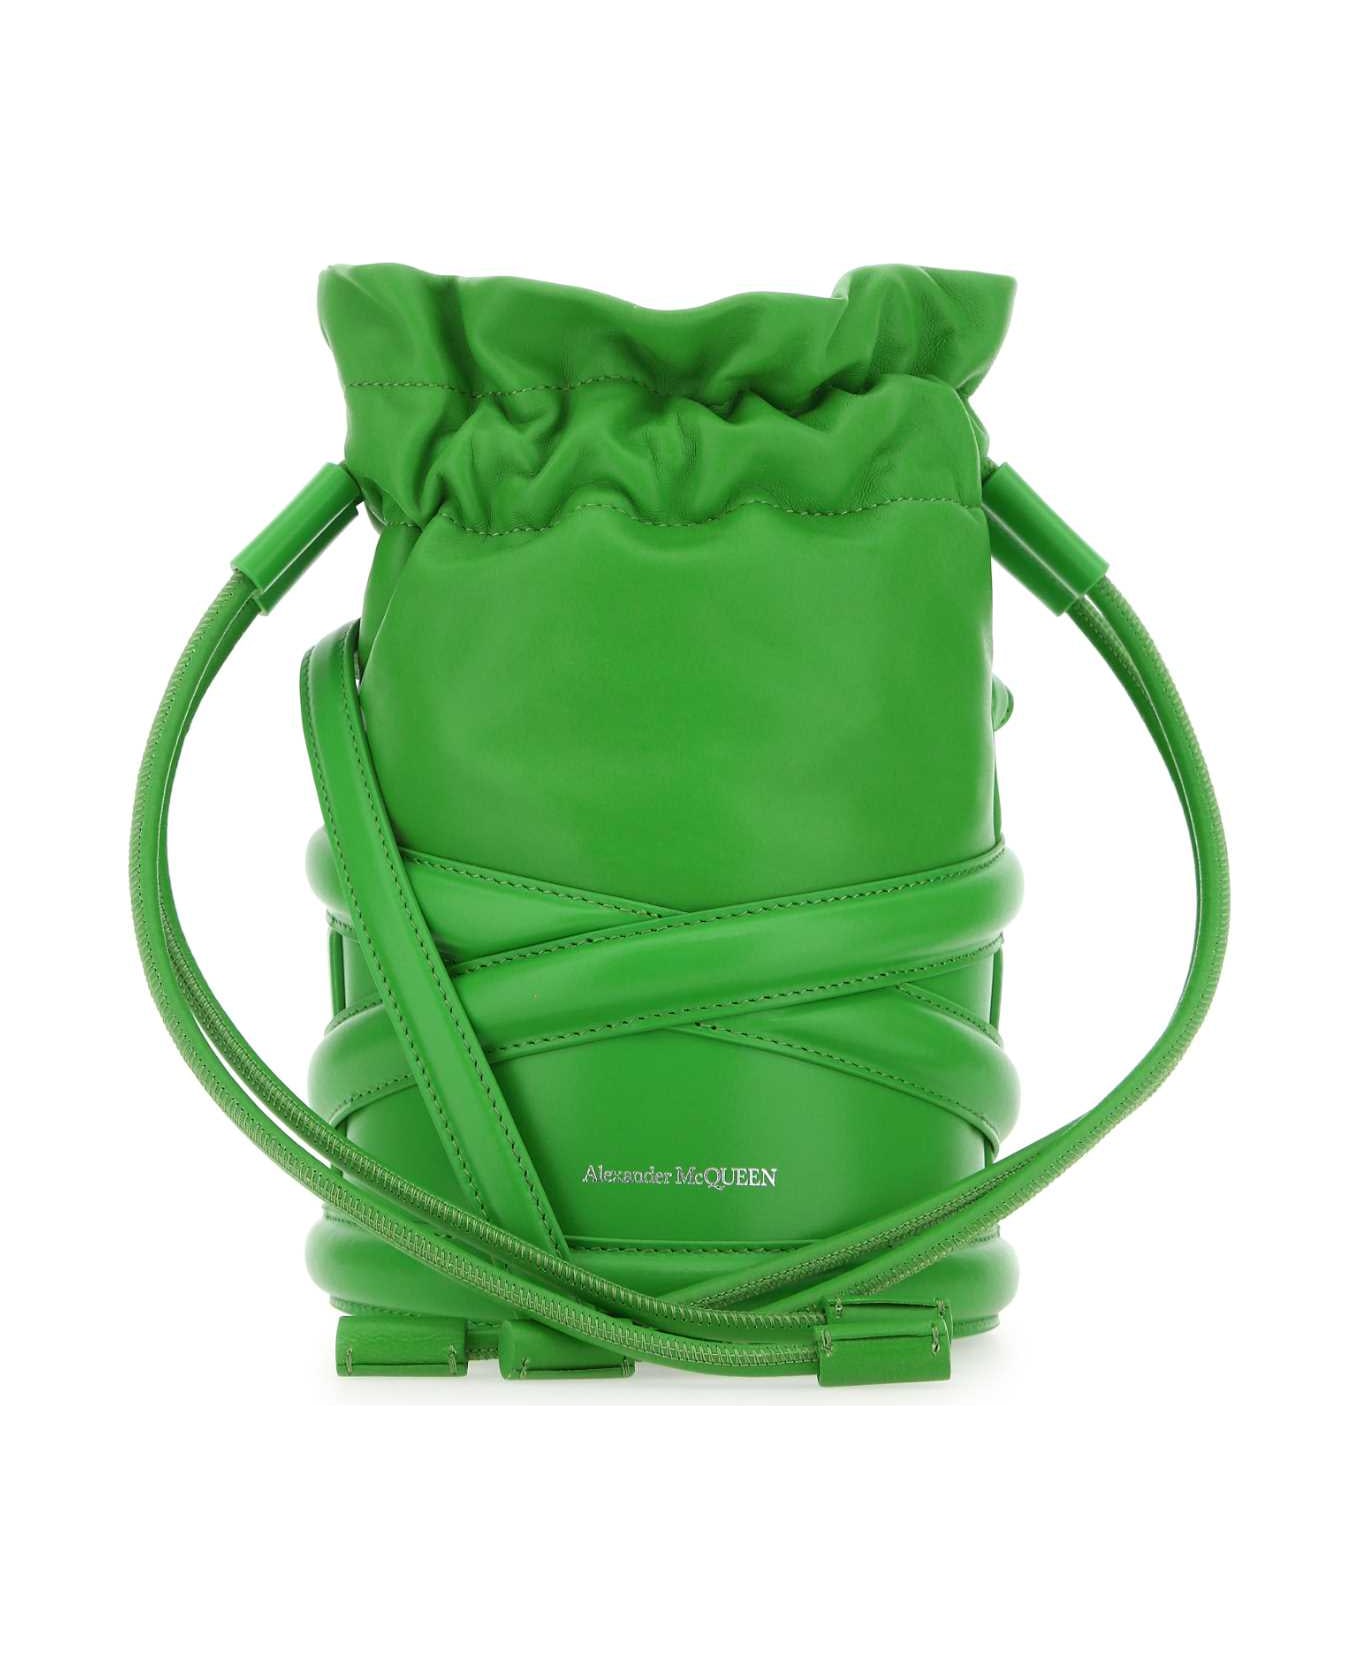 Alexander McQueen Grass Green Leather Bucket Bag - 3800